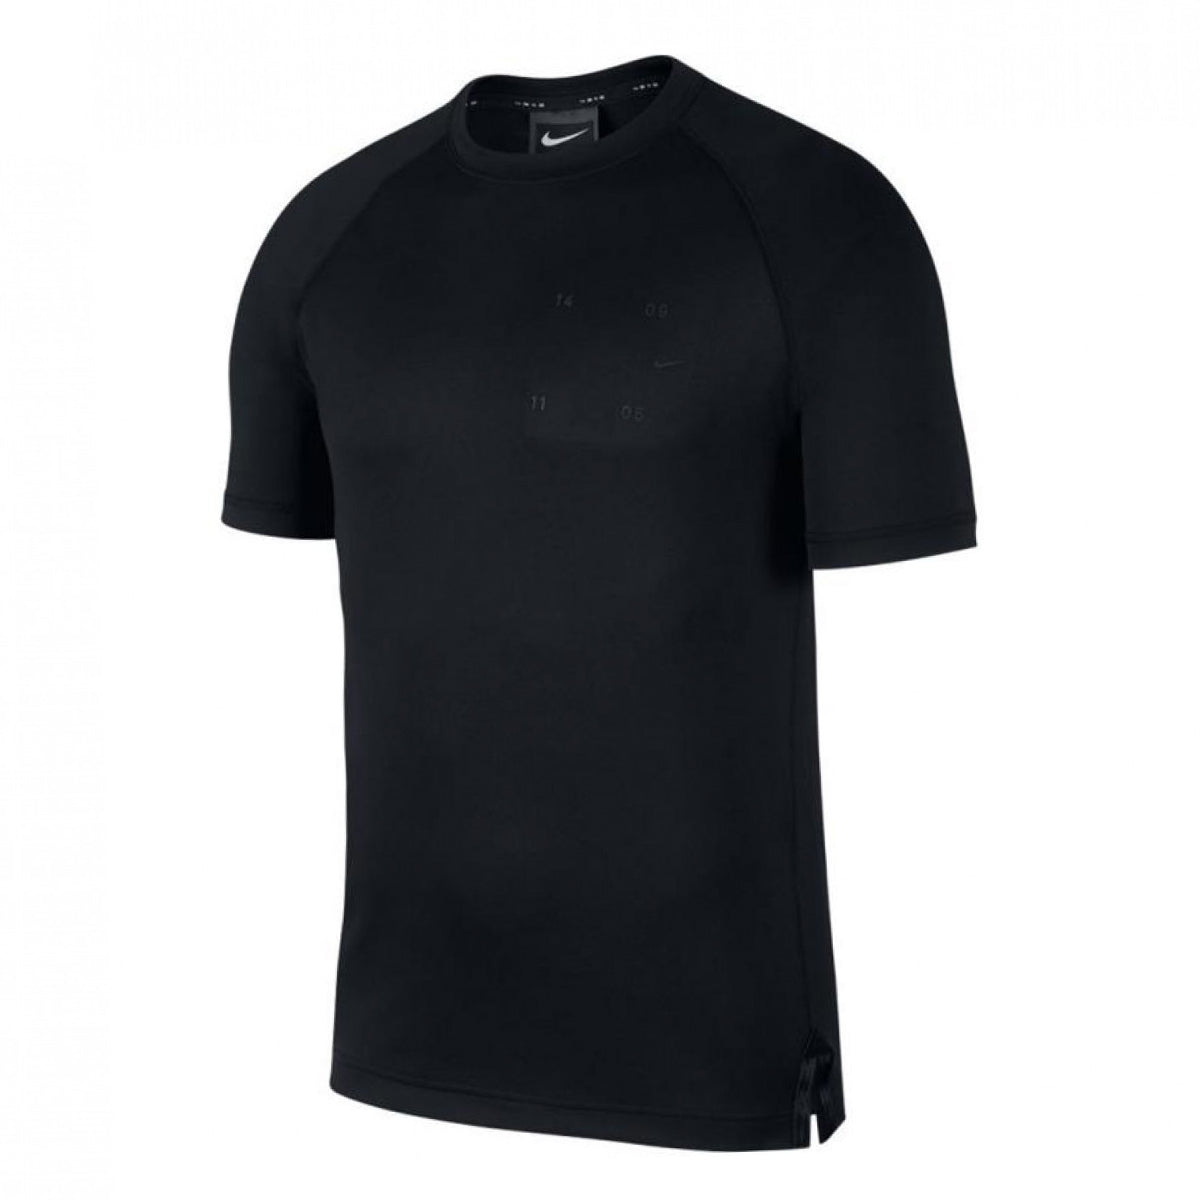 Nike Sportswear Tech Pack Tee Mens Style : Bv4441